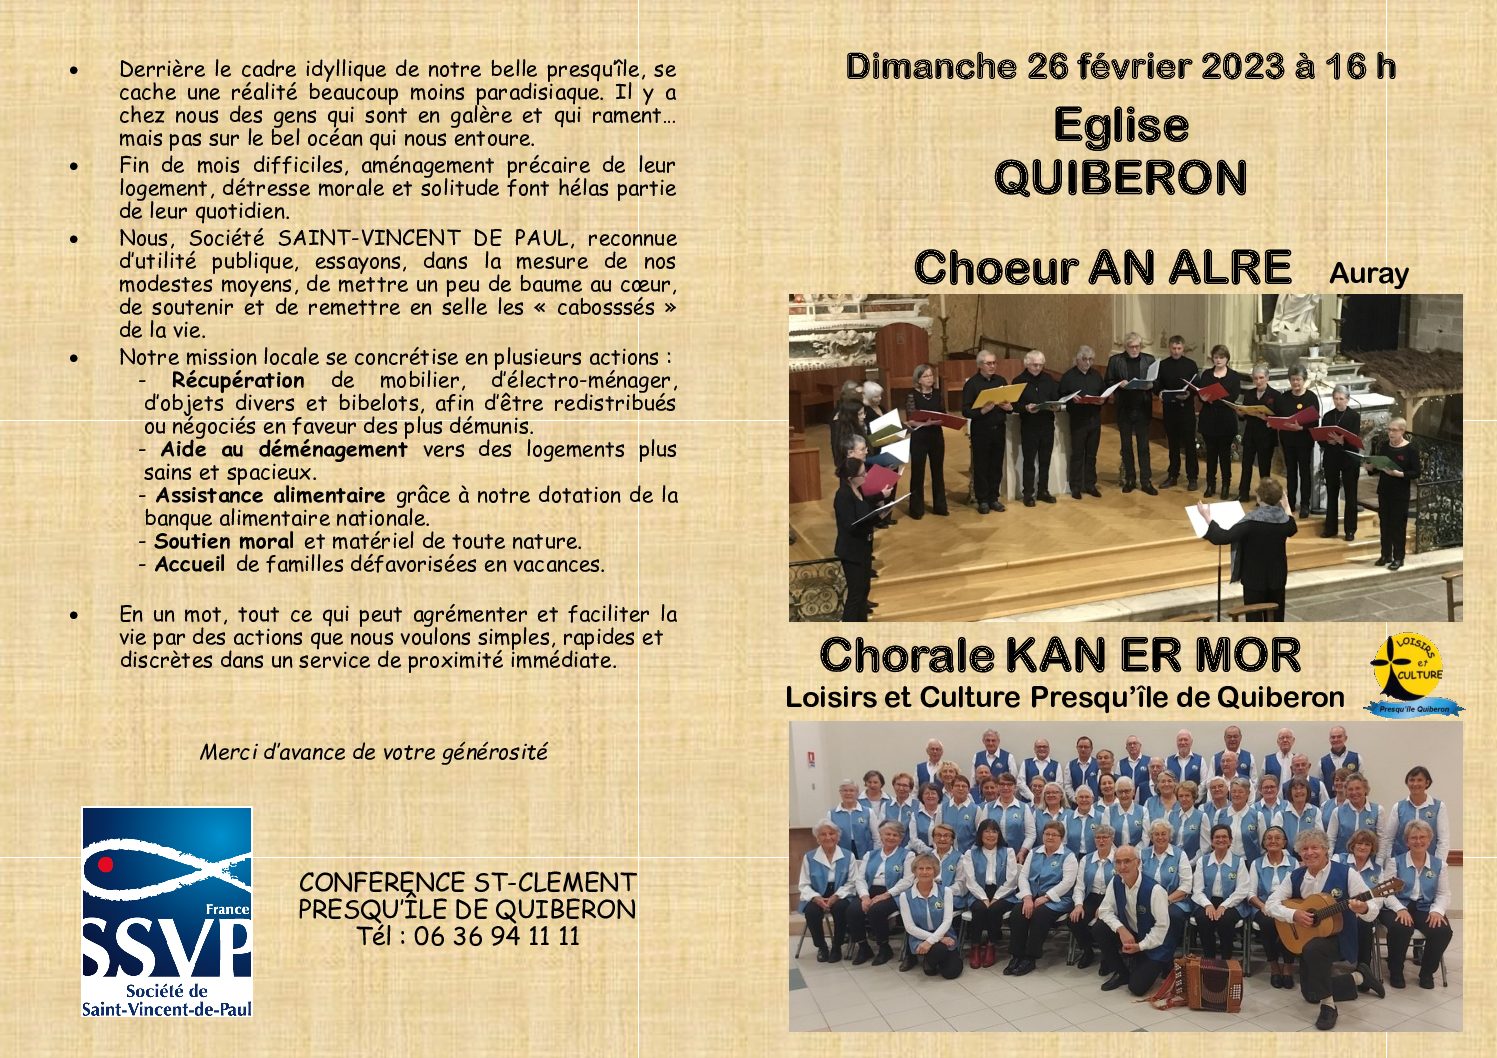 Concert Chorale Kan er Mor dimanche 26 février Eglise de Quiberon